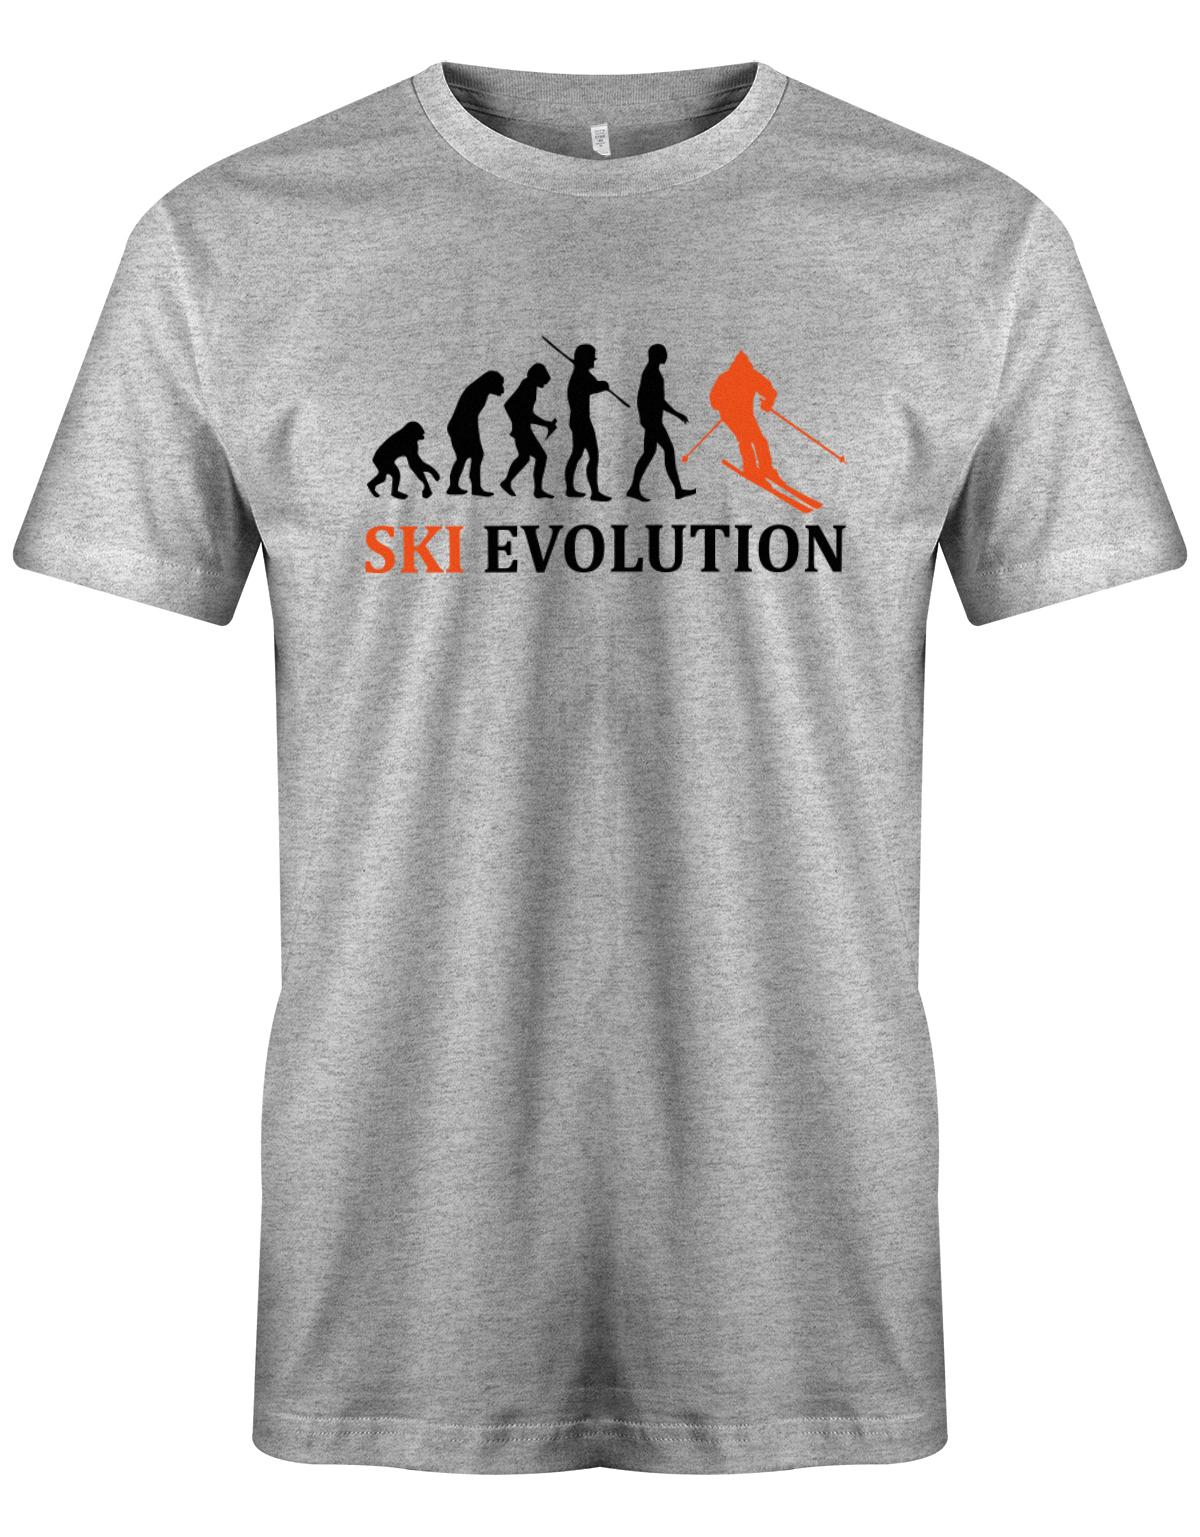 Ski-Evolution-Herren-Shirt-Apres-Ski-Grau